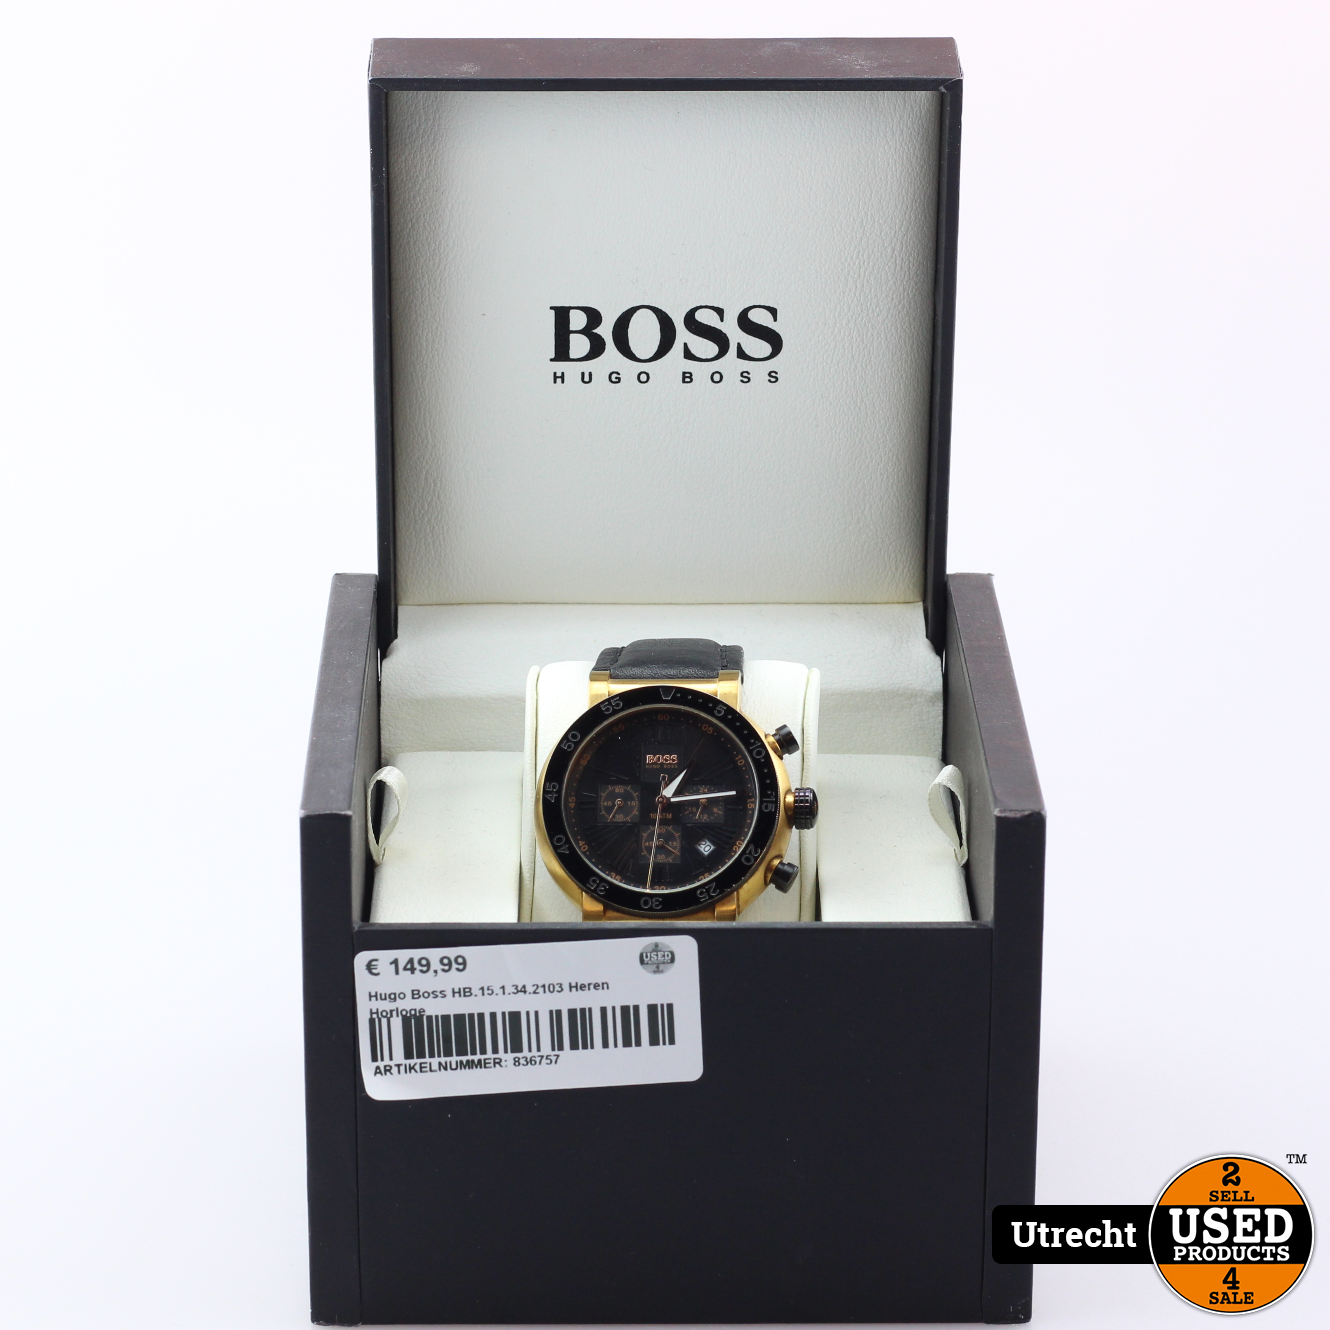 Coördineren BES driehoek Hugo Boss HB.15.1.34.2103 Heren Horloge - Used Products Utrecht